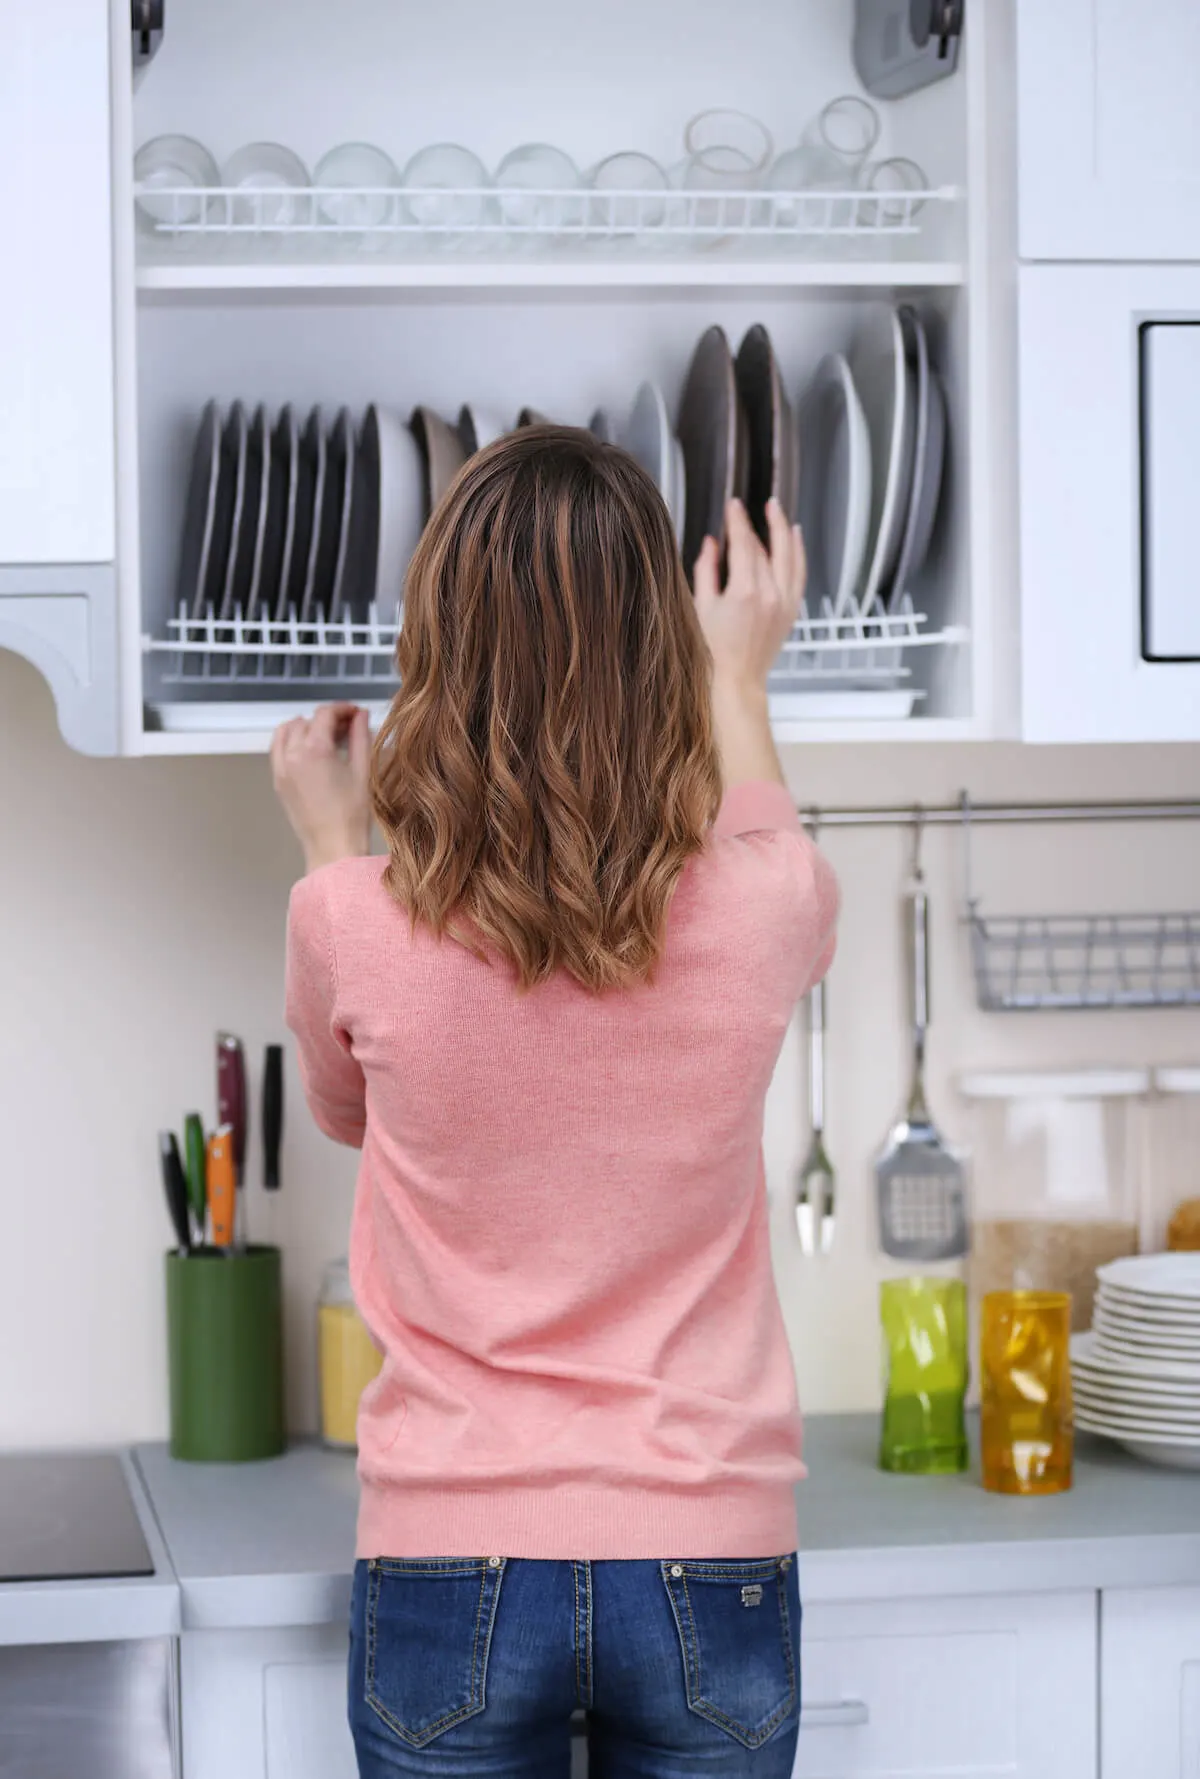 Woman sorting plates in cupboard